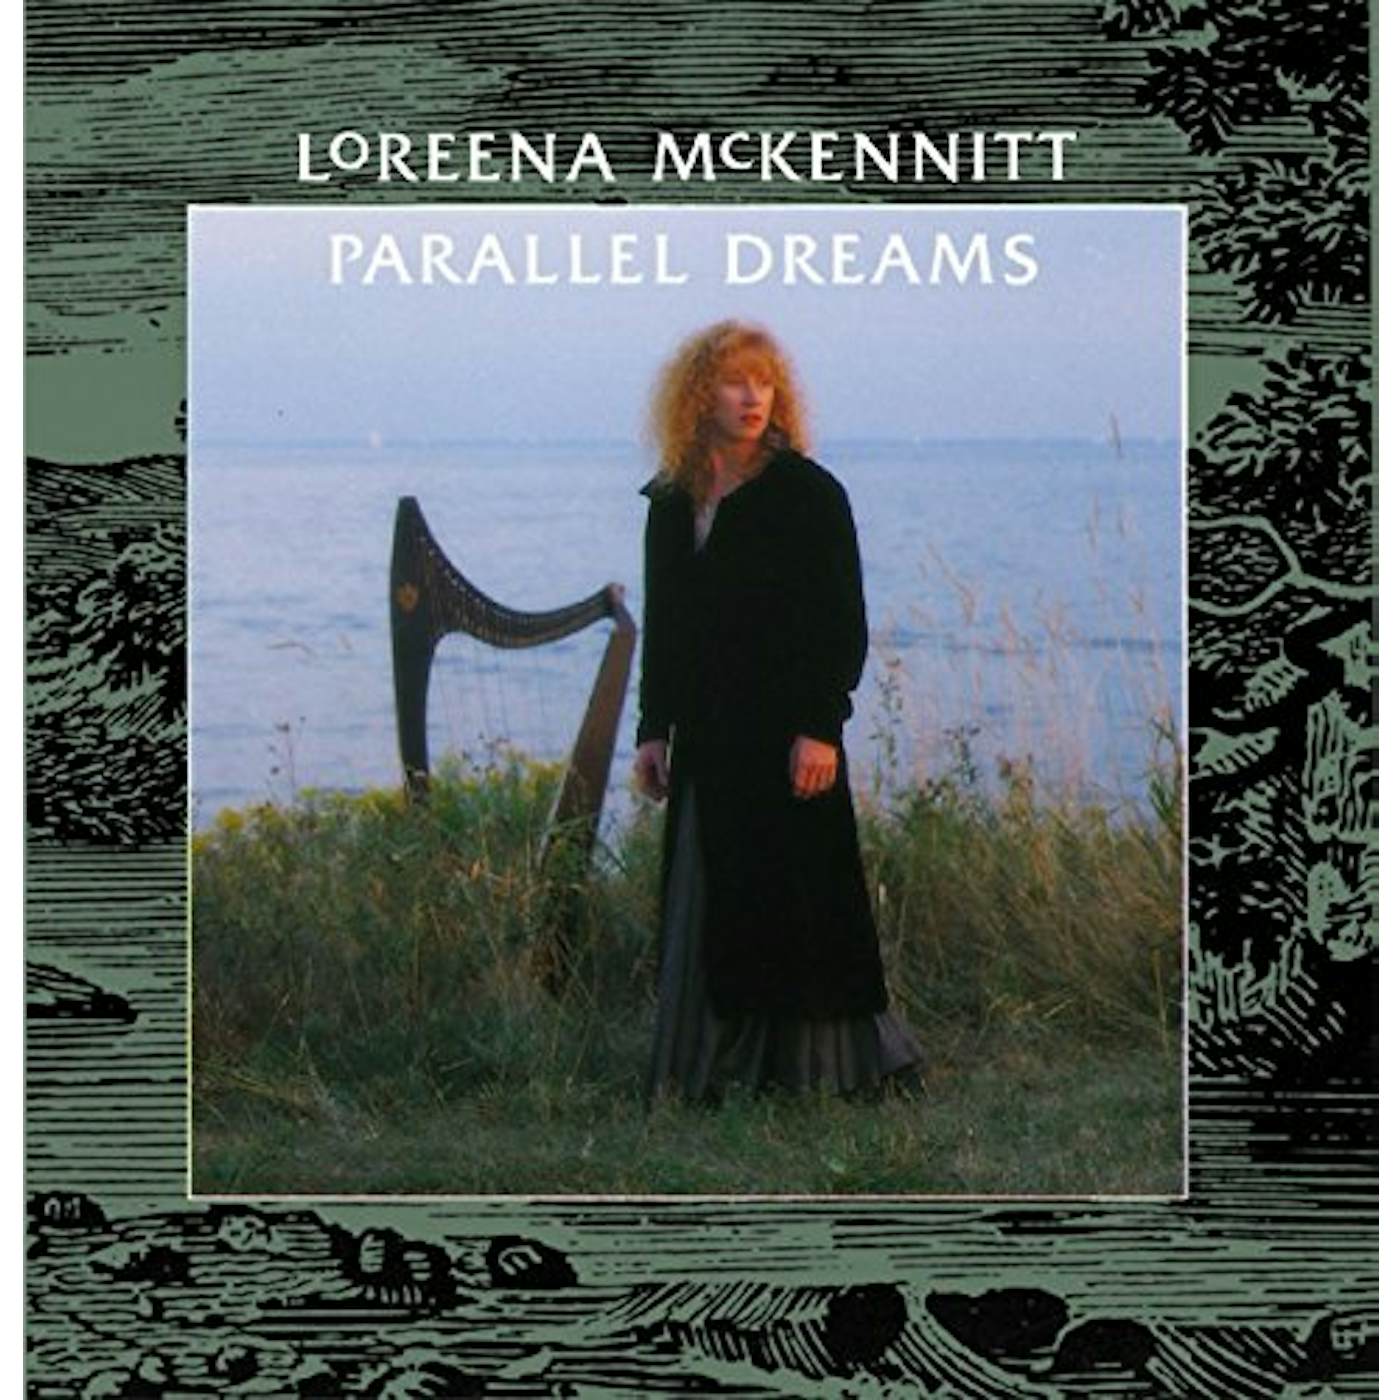 Loreena McKennitt Parallel Dreams Vinyl Record